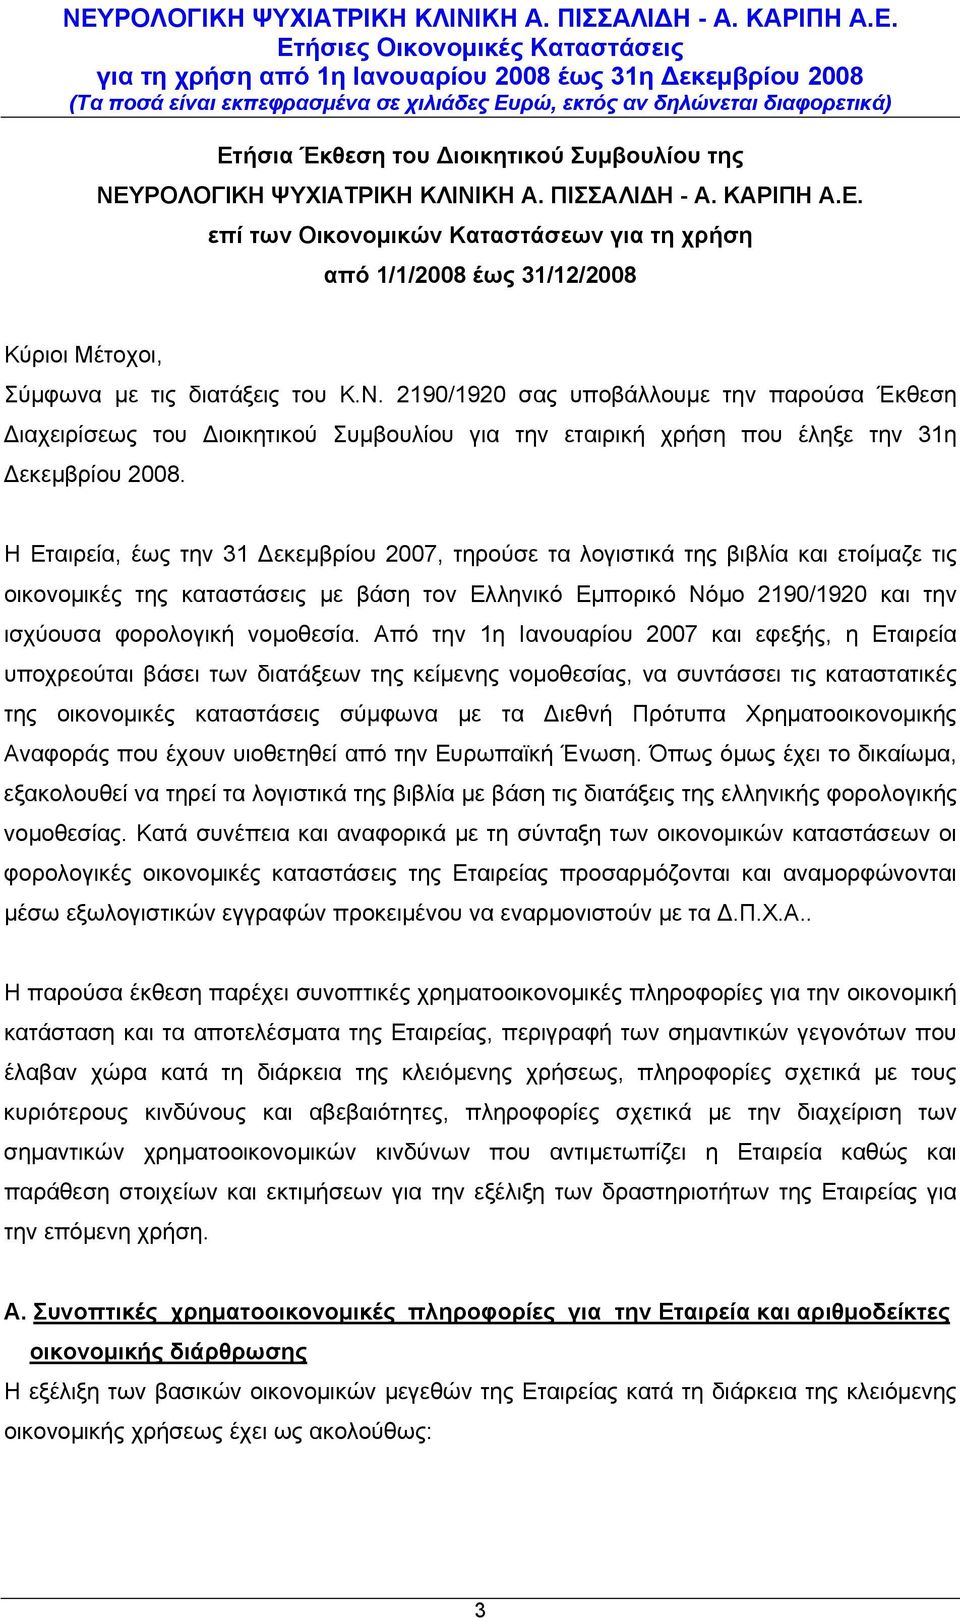 Η Εταιρεία, έως την 31 Δεκεμβρίου 2007, τηρούσε τα λογιστικά της βιβλία και ετοίμαζε τις οικονομικές της καταστάσεις με βάση τον Ελληνικό Εμπορικό Νόμο 2190/1920 και την ισχύουσα φορολογική νομοθεσία.